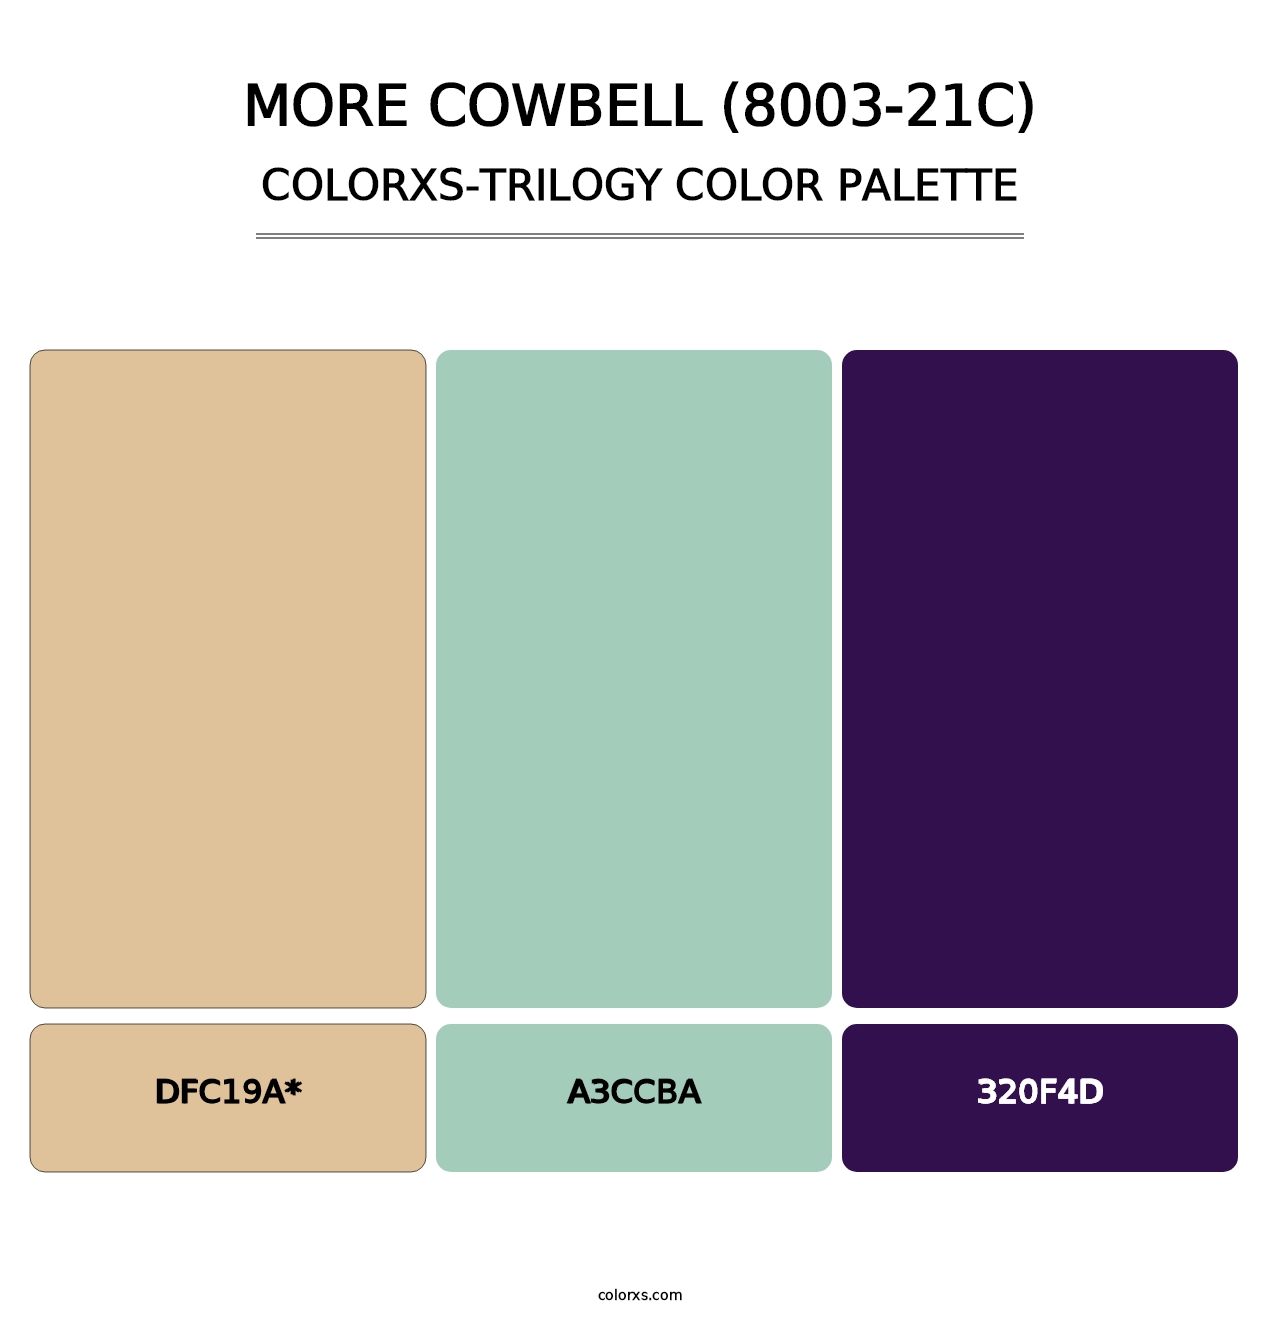 More Cowbell (8003-21C) - Colorxs Trilogy Palette